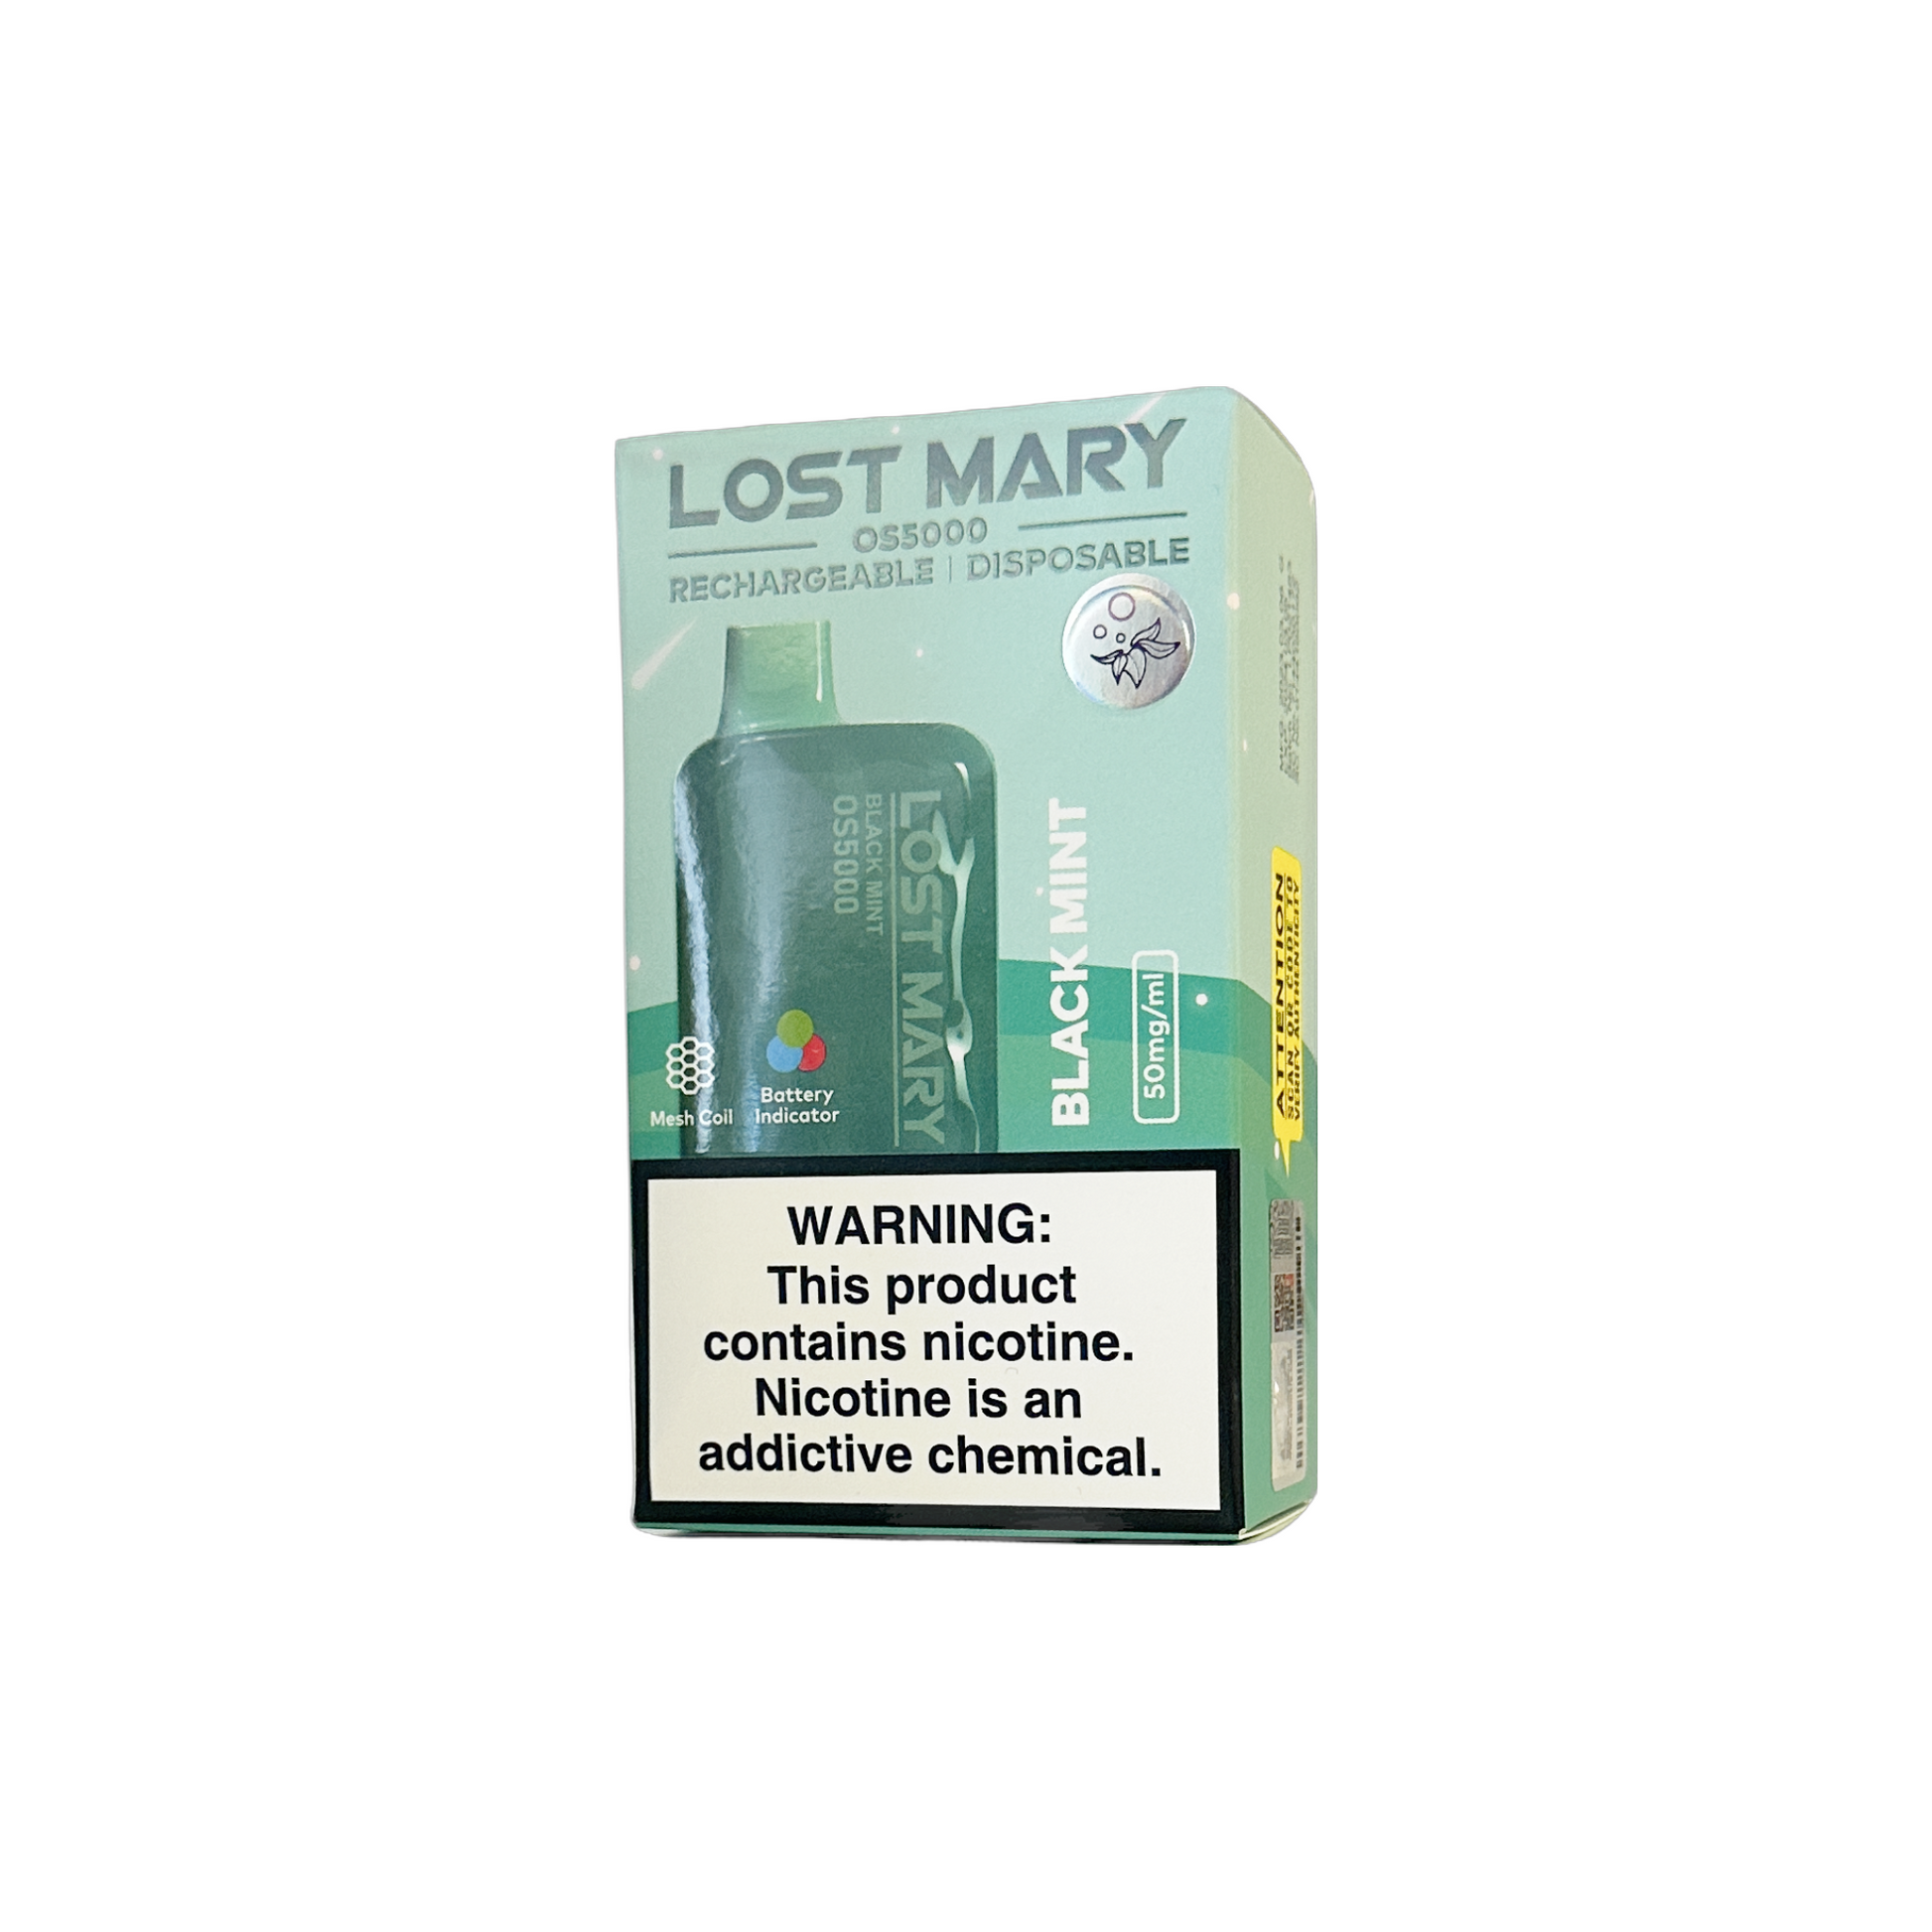 Lost Mary OS5000, Lost Mary OS5000 Vapes, Lost Mary OS5000 Disposable Vapes, Lost Mary OS5000 5000 Puffs, Lost Mary OS5000 Disposable Vape 5000 Puffs, Buy Lost Mary OS5000 Vape, Black Mint Lost Mary OS5000 Vape, Lost Mary OS5000 Black Mint Vape, Lost Mary OS5000 Vapeszn.